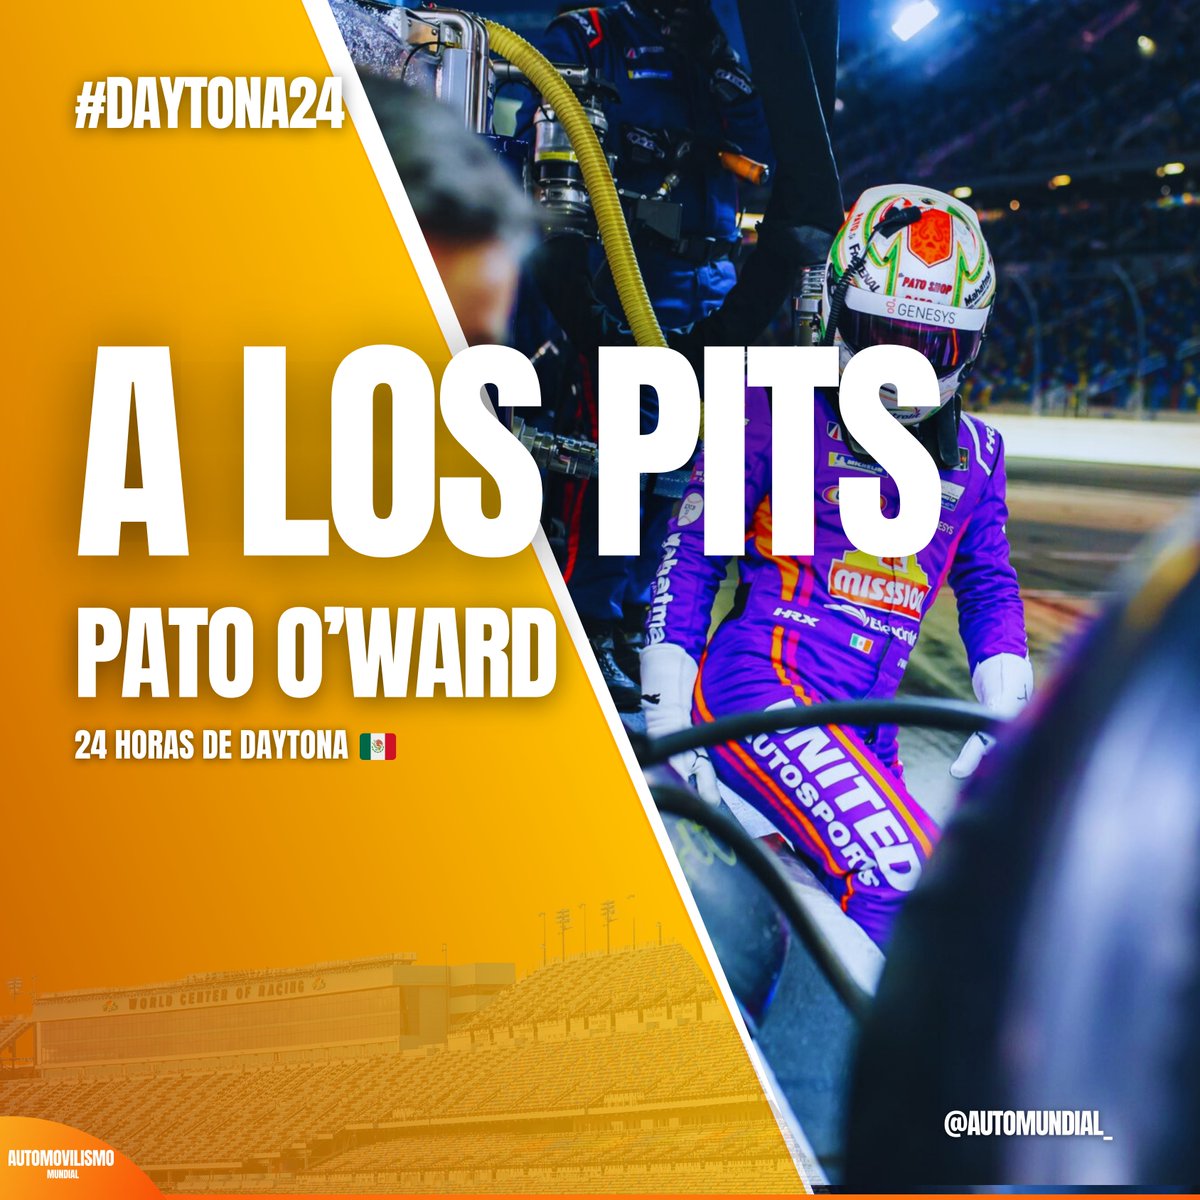 Fue todo para Pato O'Ward en #Daytona24 🇲🇽

Nada que reprocharte , Campeón. 

#pato #patooward